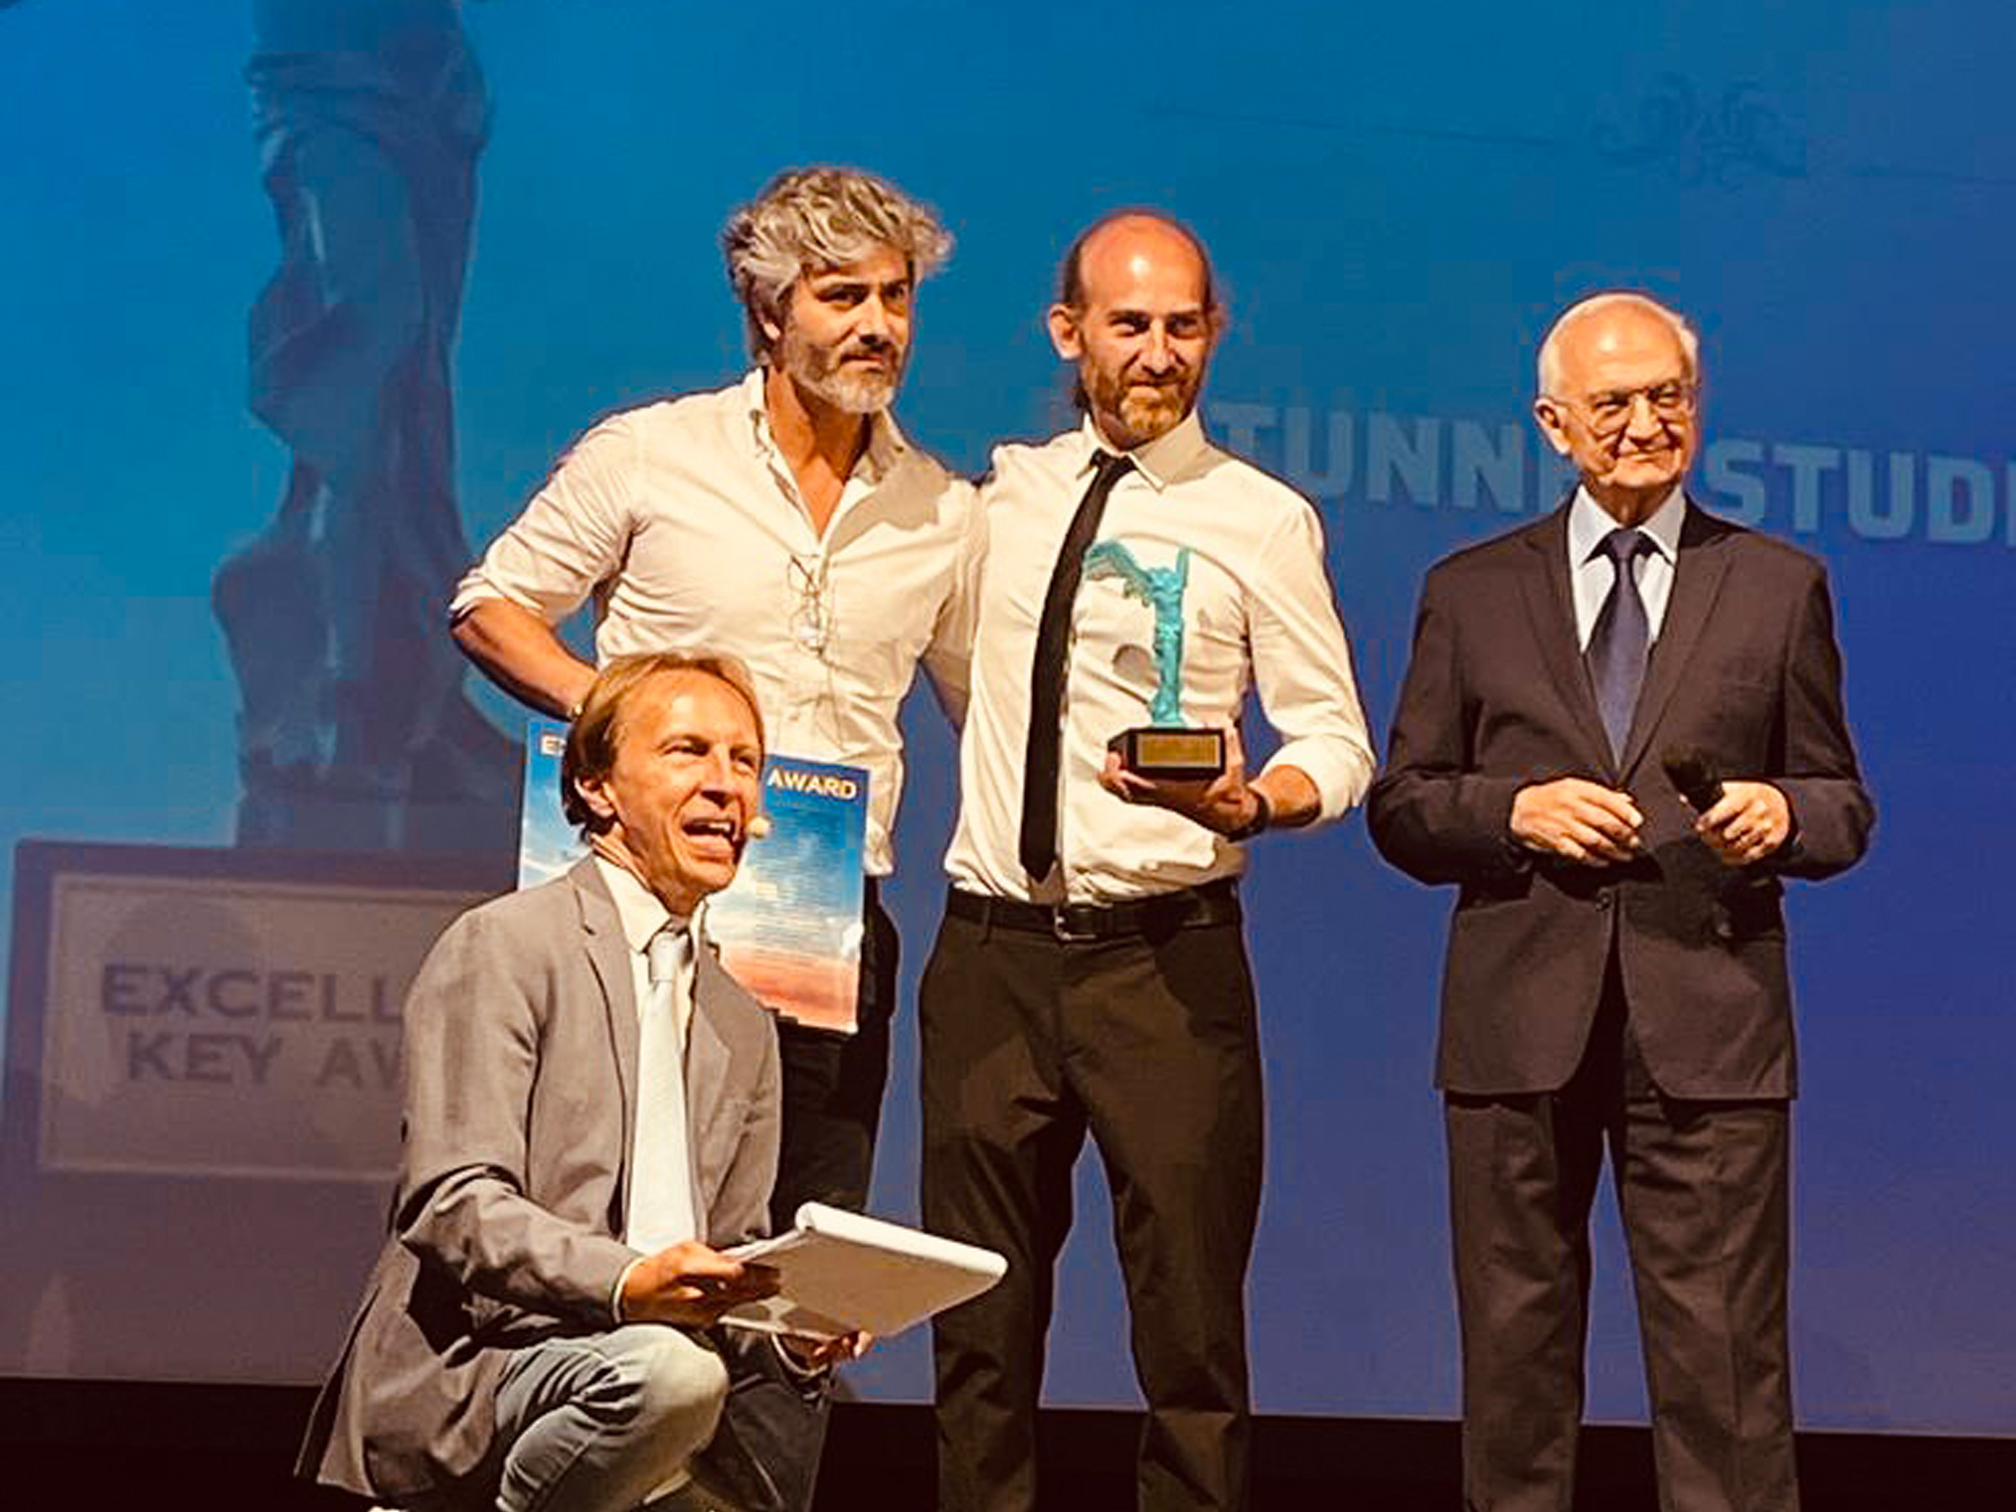 Tunnel Studios vince l’Excellence Key Award, come eccellenza creativa italiana 2022!